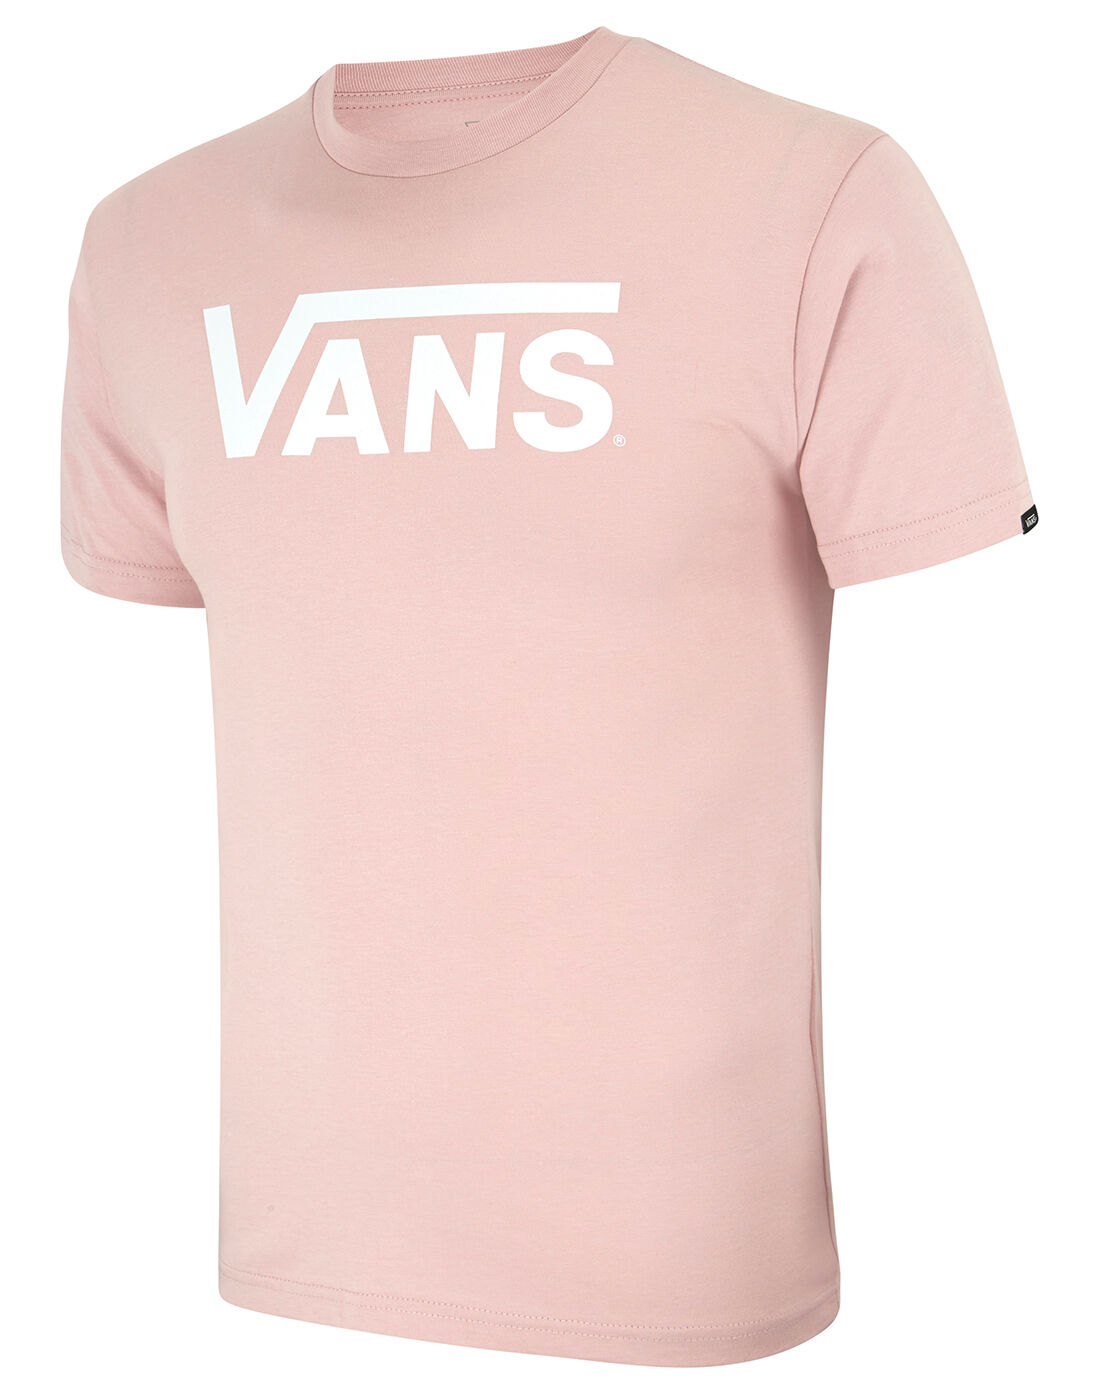 vans pink top